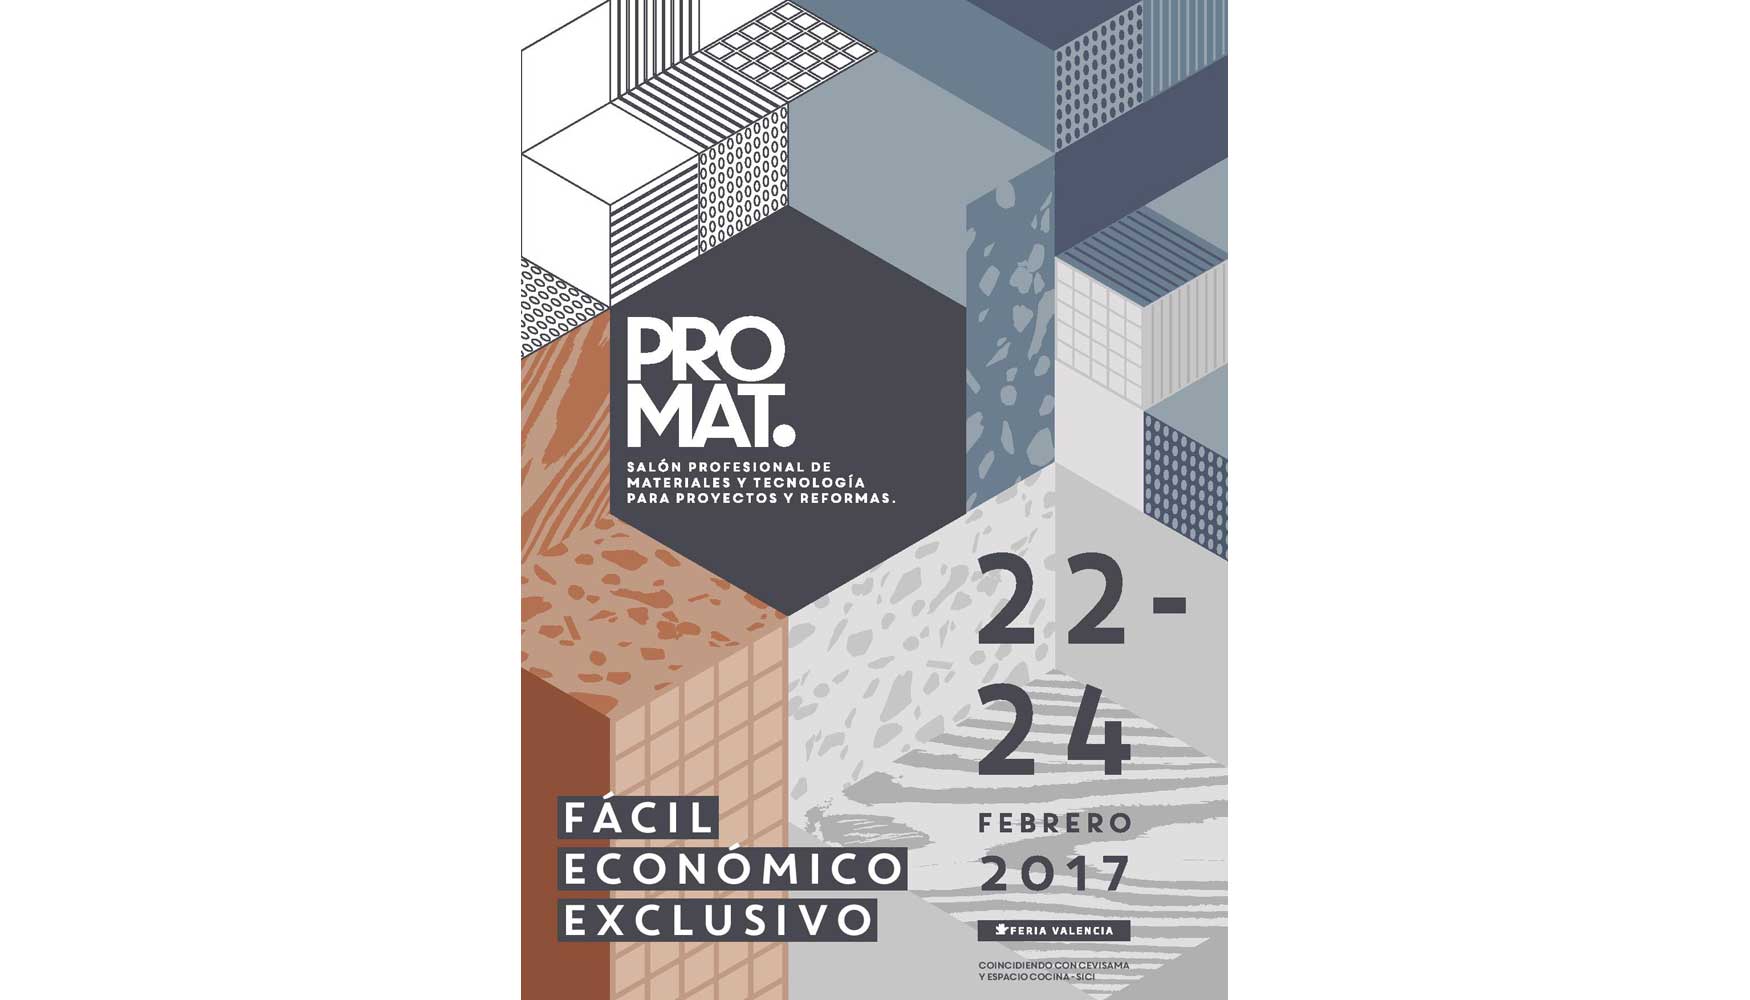 Cartel promocional de Promat, realizado por el estudio valenciano de diseo Sleeplate Projects